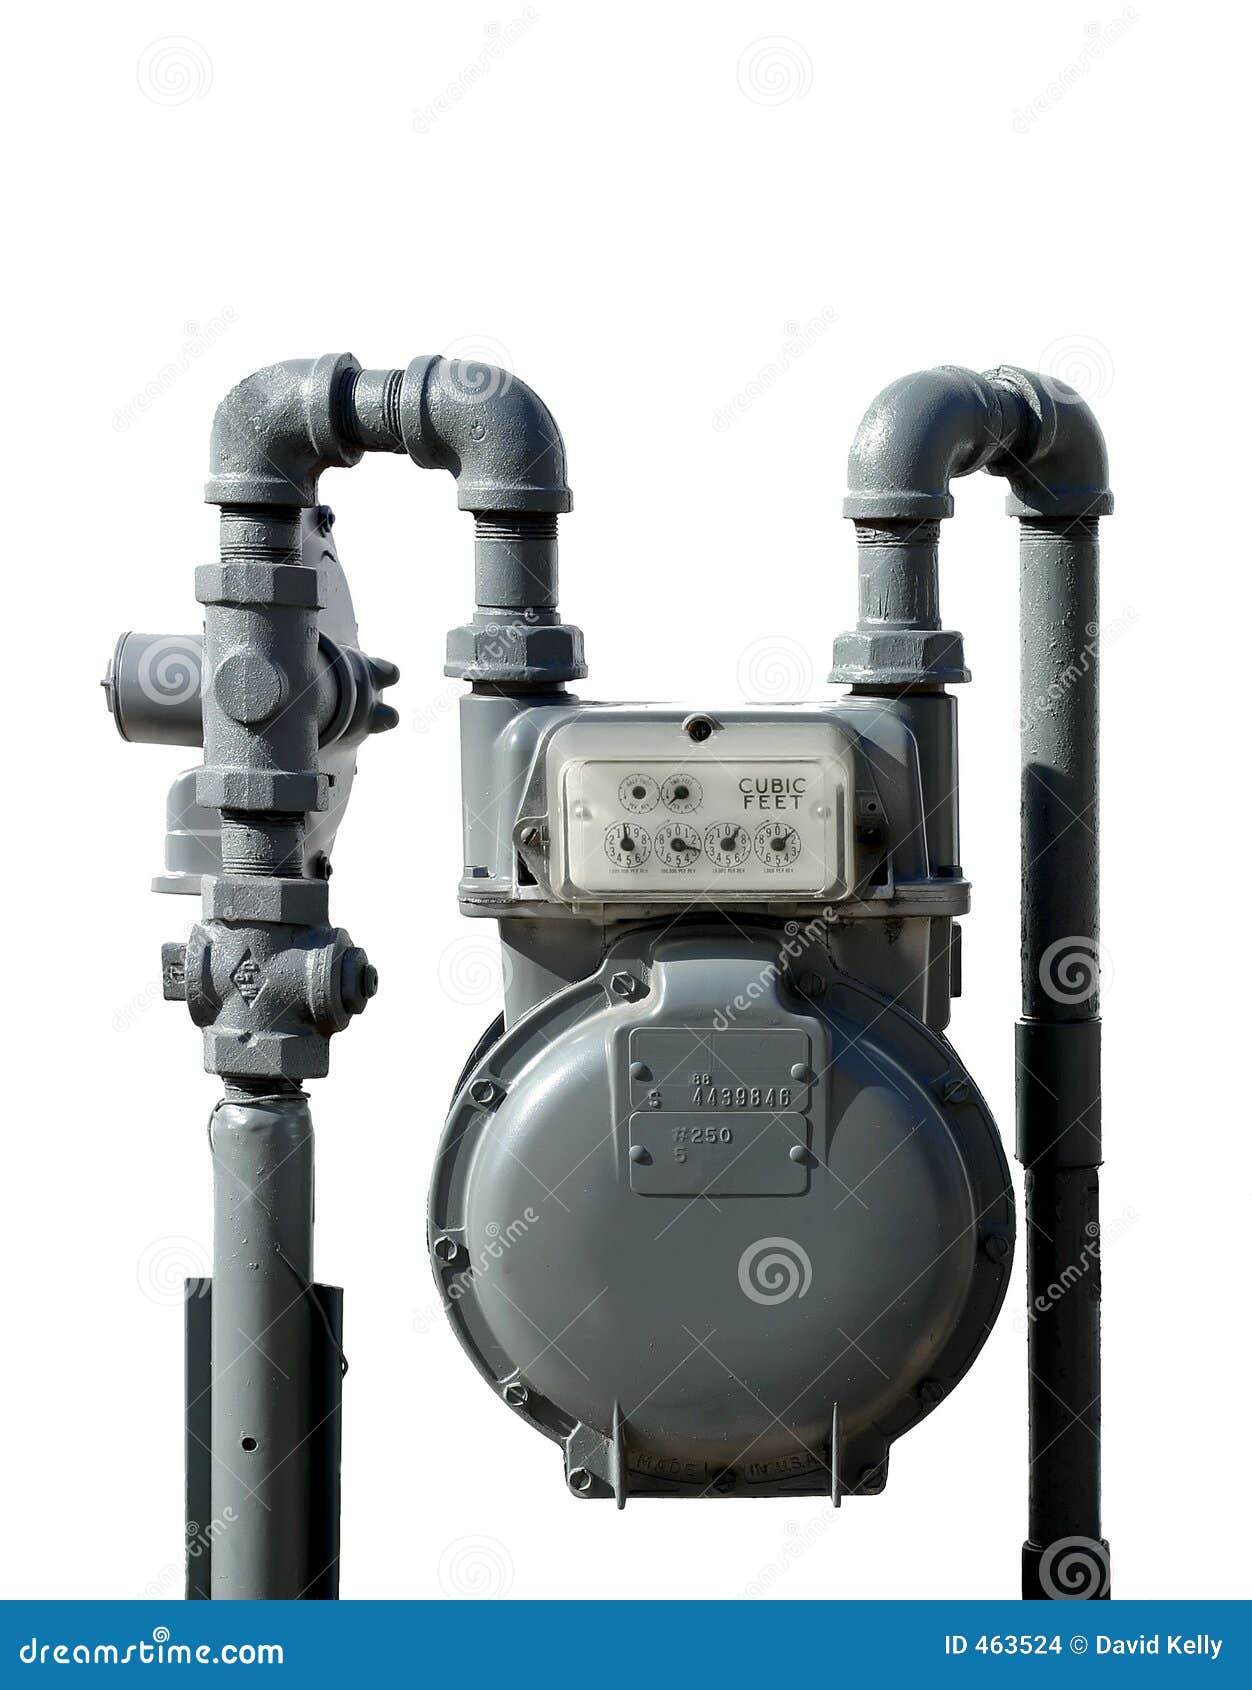 natural gas meter